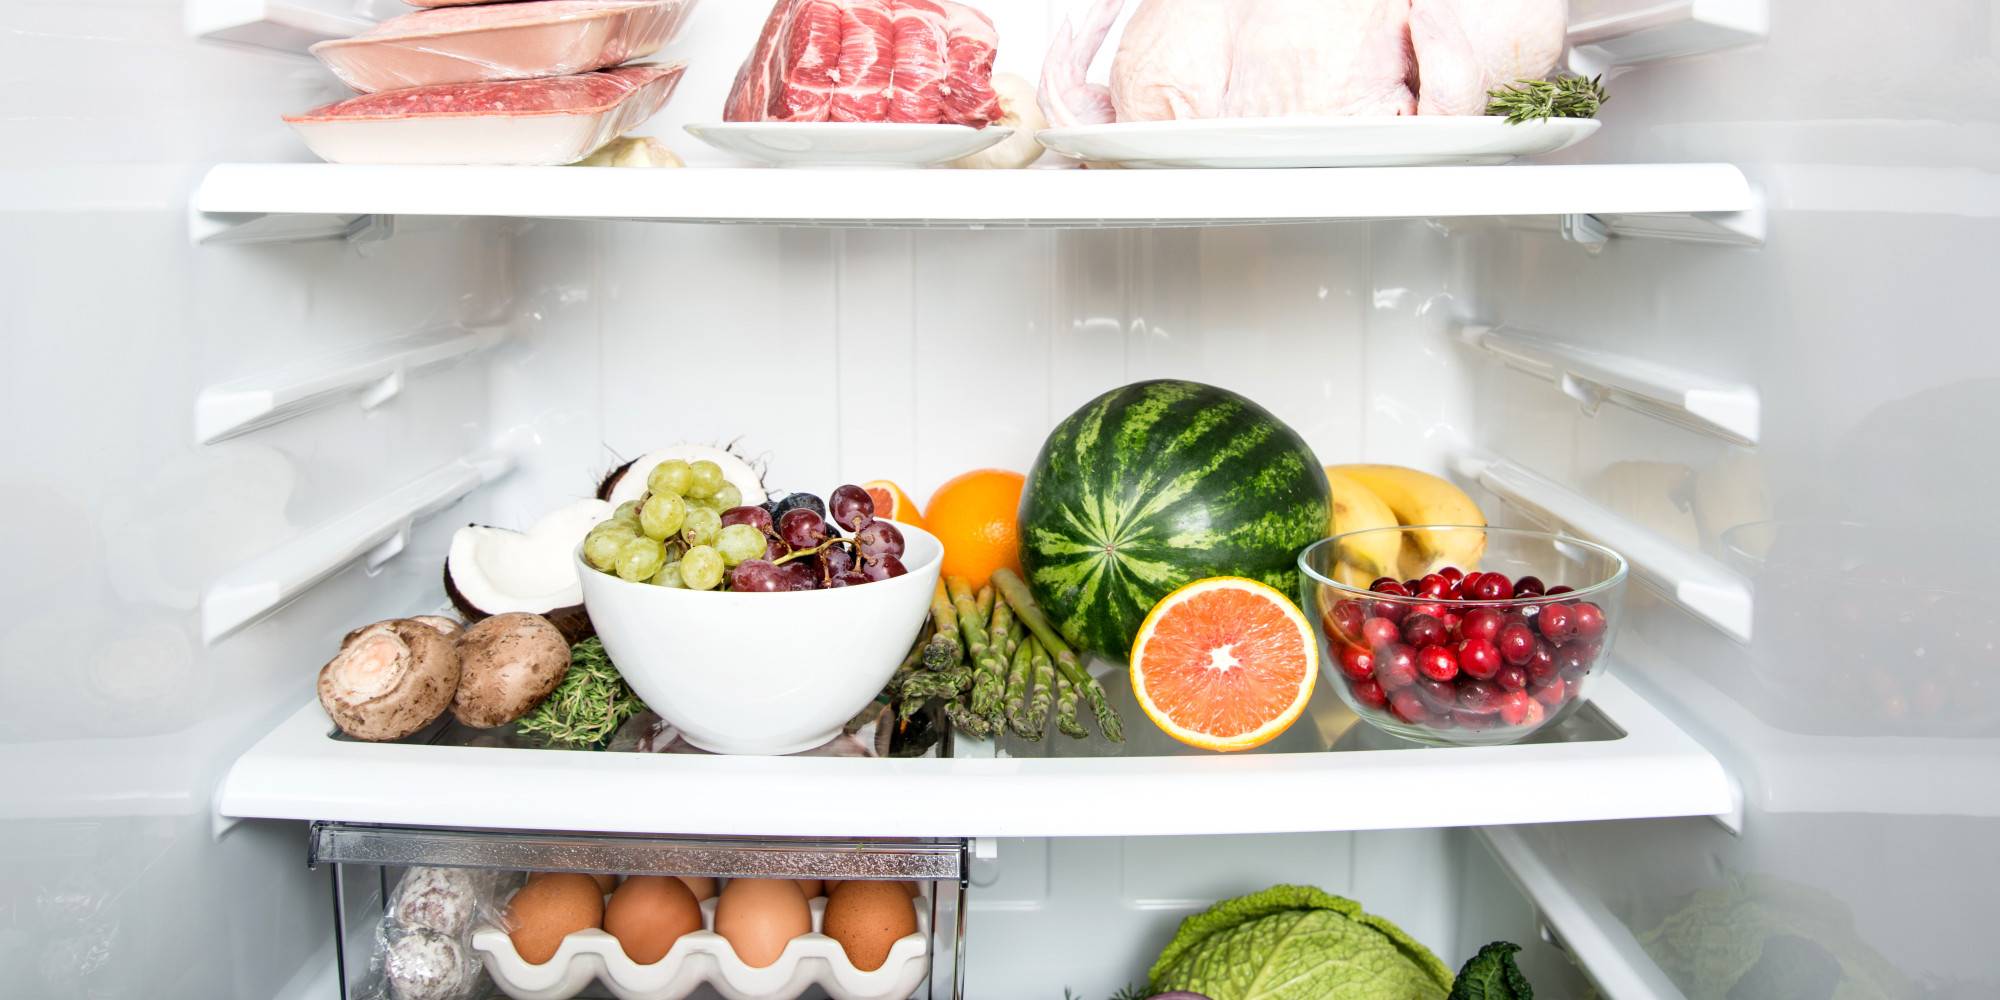 Правильное хранение продуктов в холодильнике дома